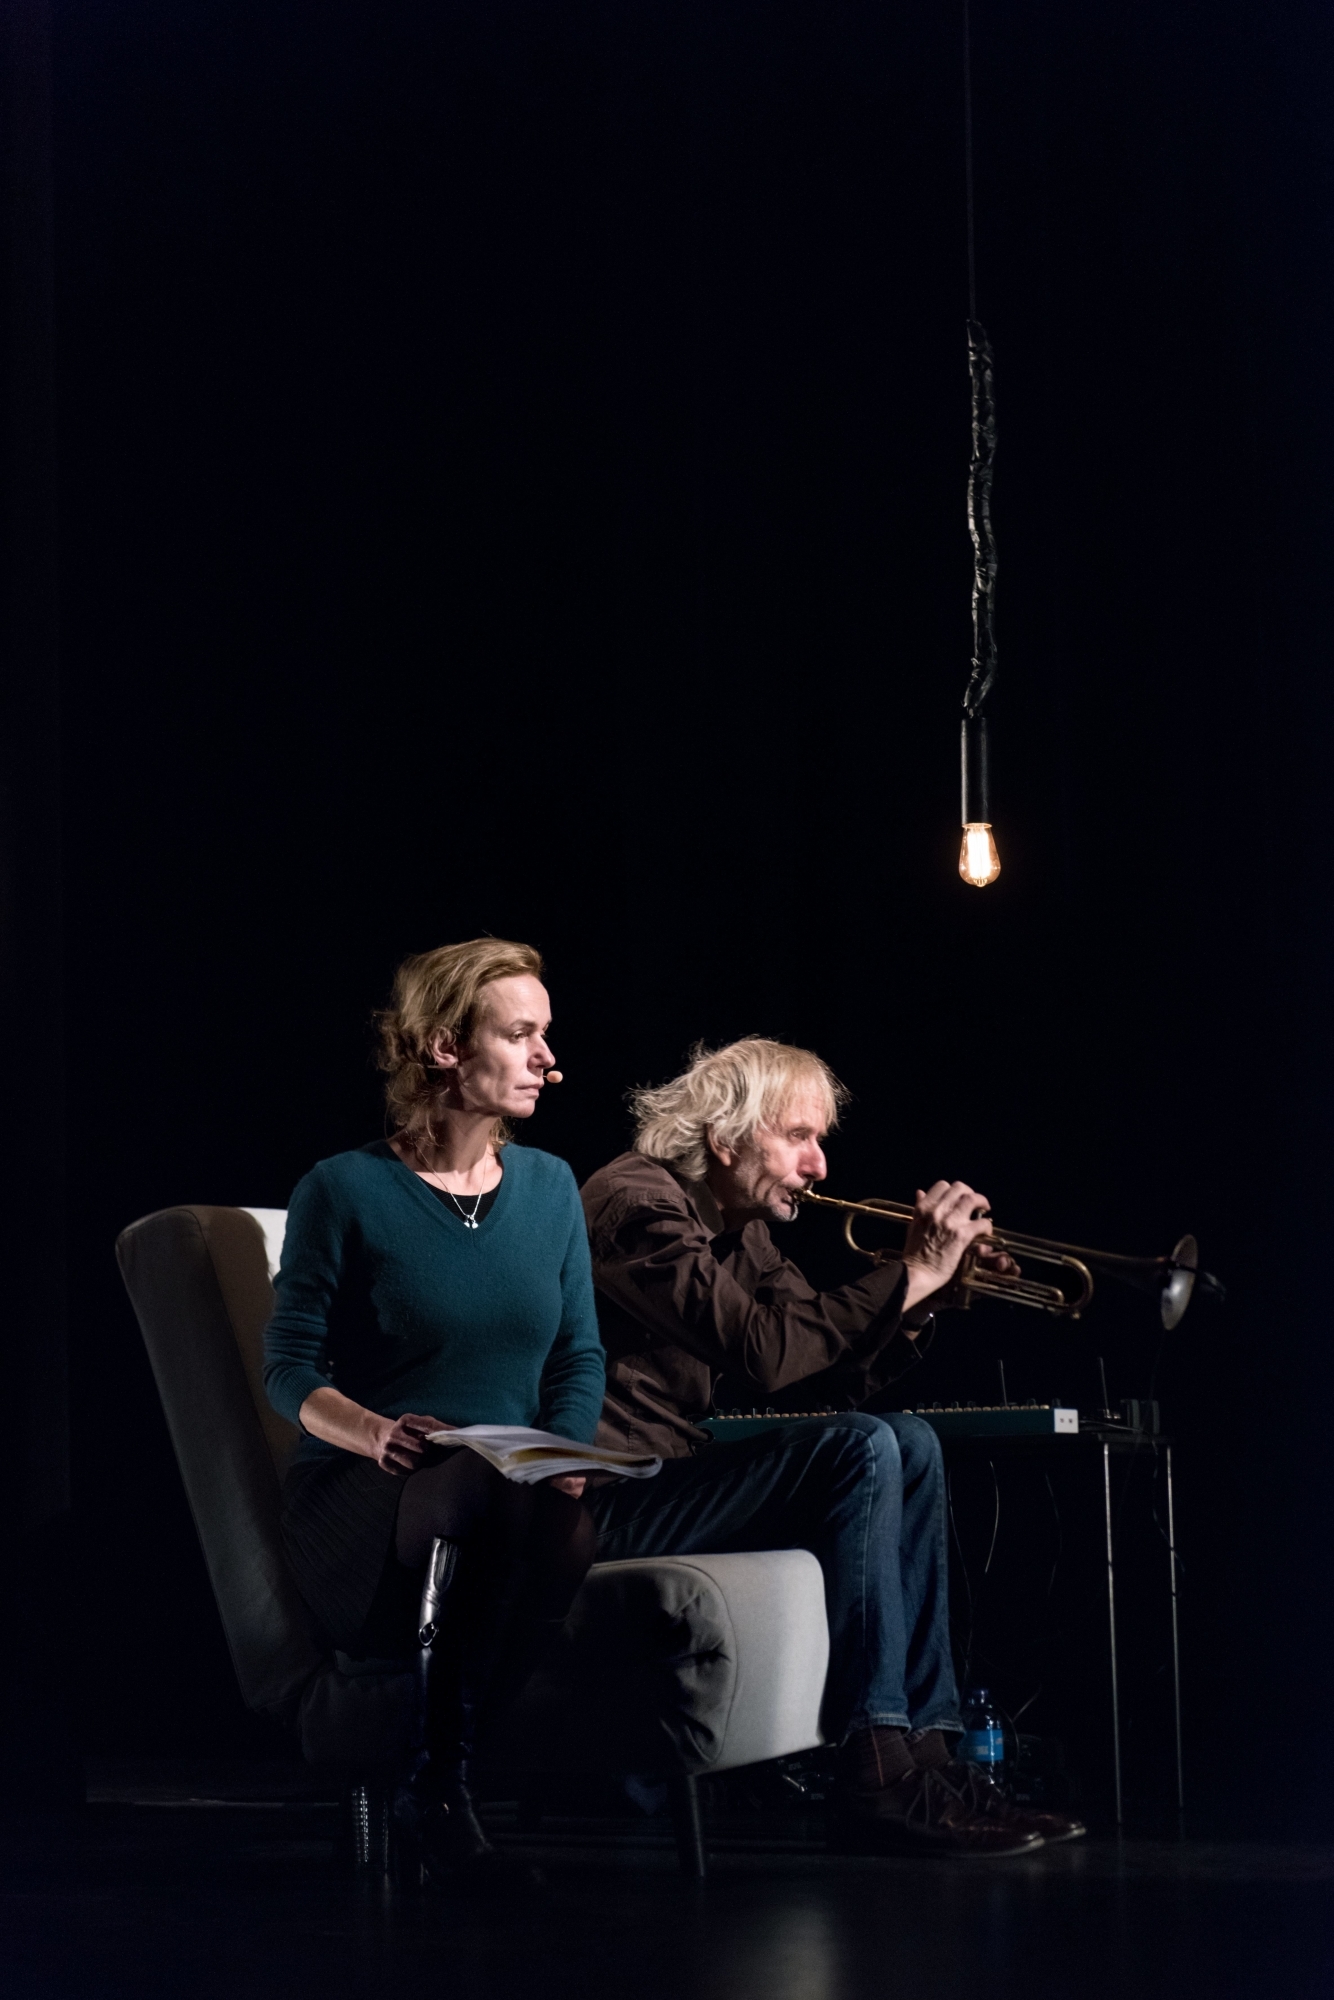 Sandrine Bonnaire à la voix, Erik Truffaz à la trompette, pour une lecture musicale de "La clameur des lucioles" de Joël Bastard.